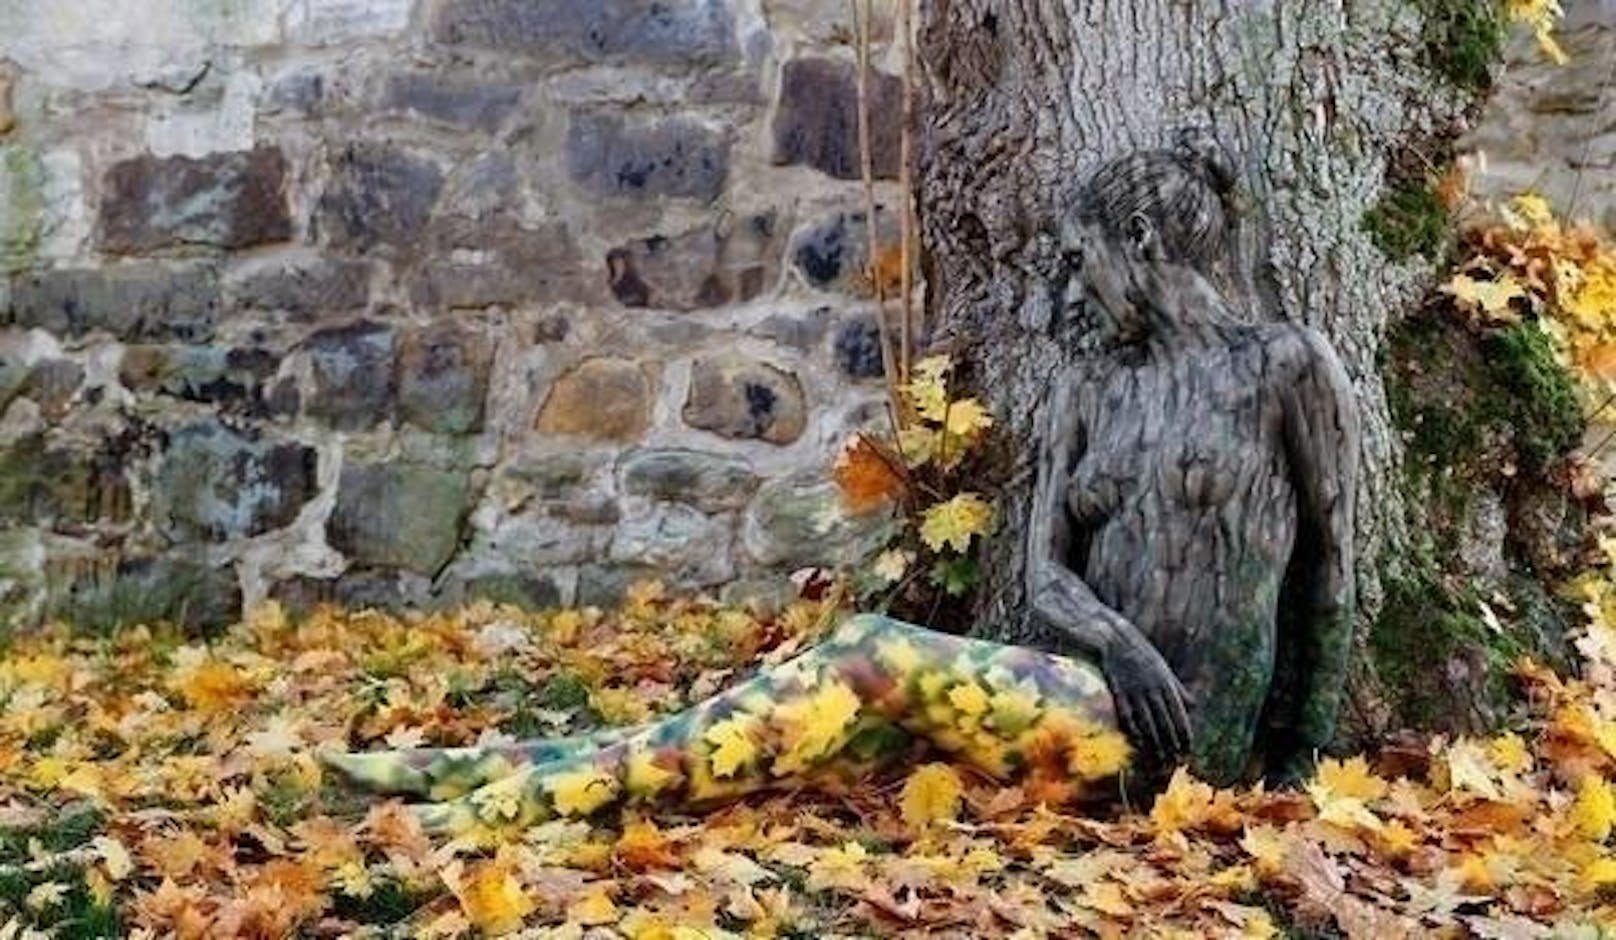 Die Frau scheint am Fuße des Baumes zu schlafen. Augenscheinlich will sie nicht gestört werden, denn sie hat sich mit den Farben der Natur getarnt.